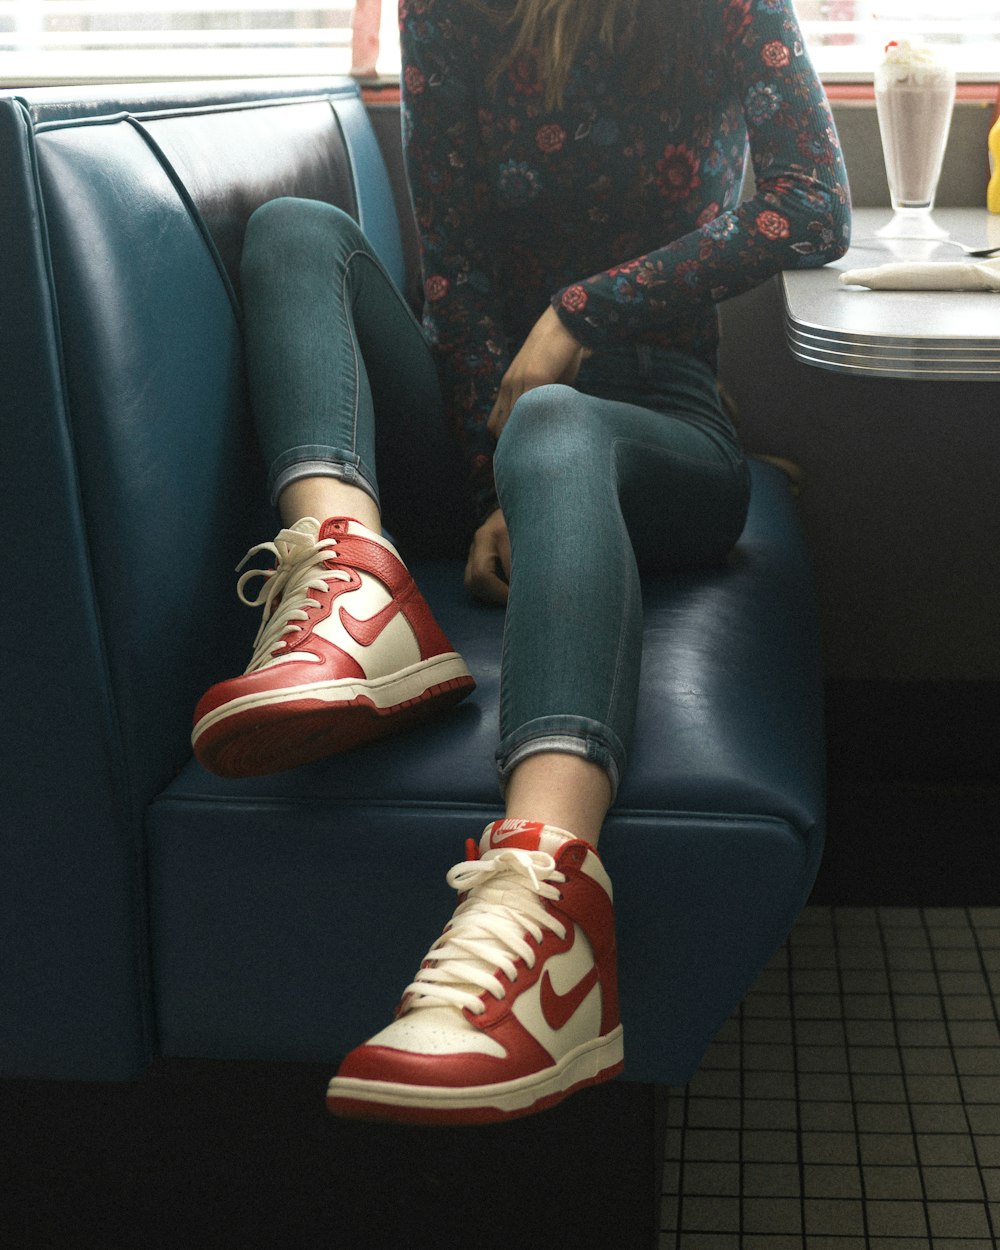 donna che indossa scarpe da ginnastica Nike mid-top rosse e bianche mentre è seduta sul sedile